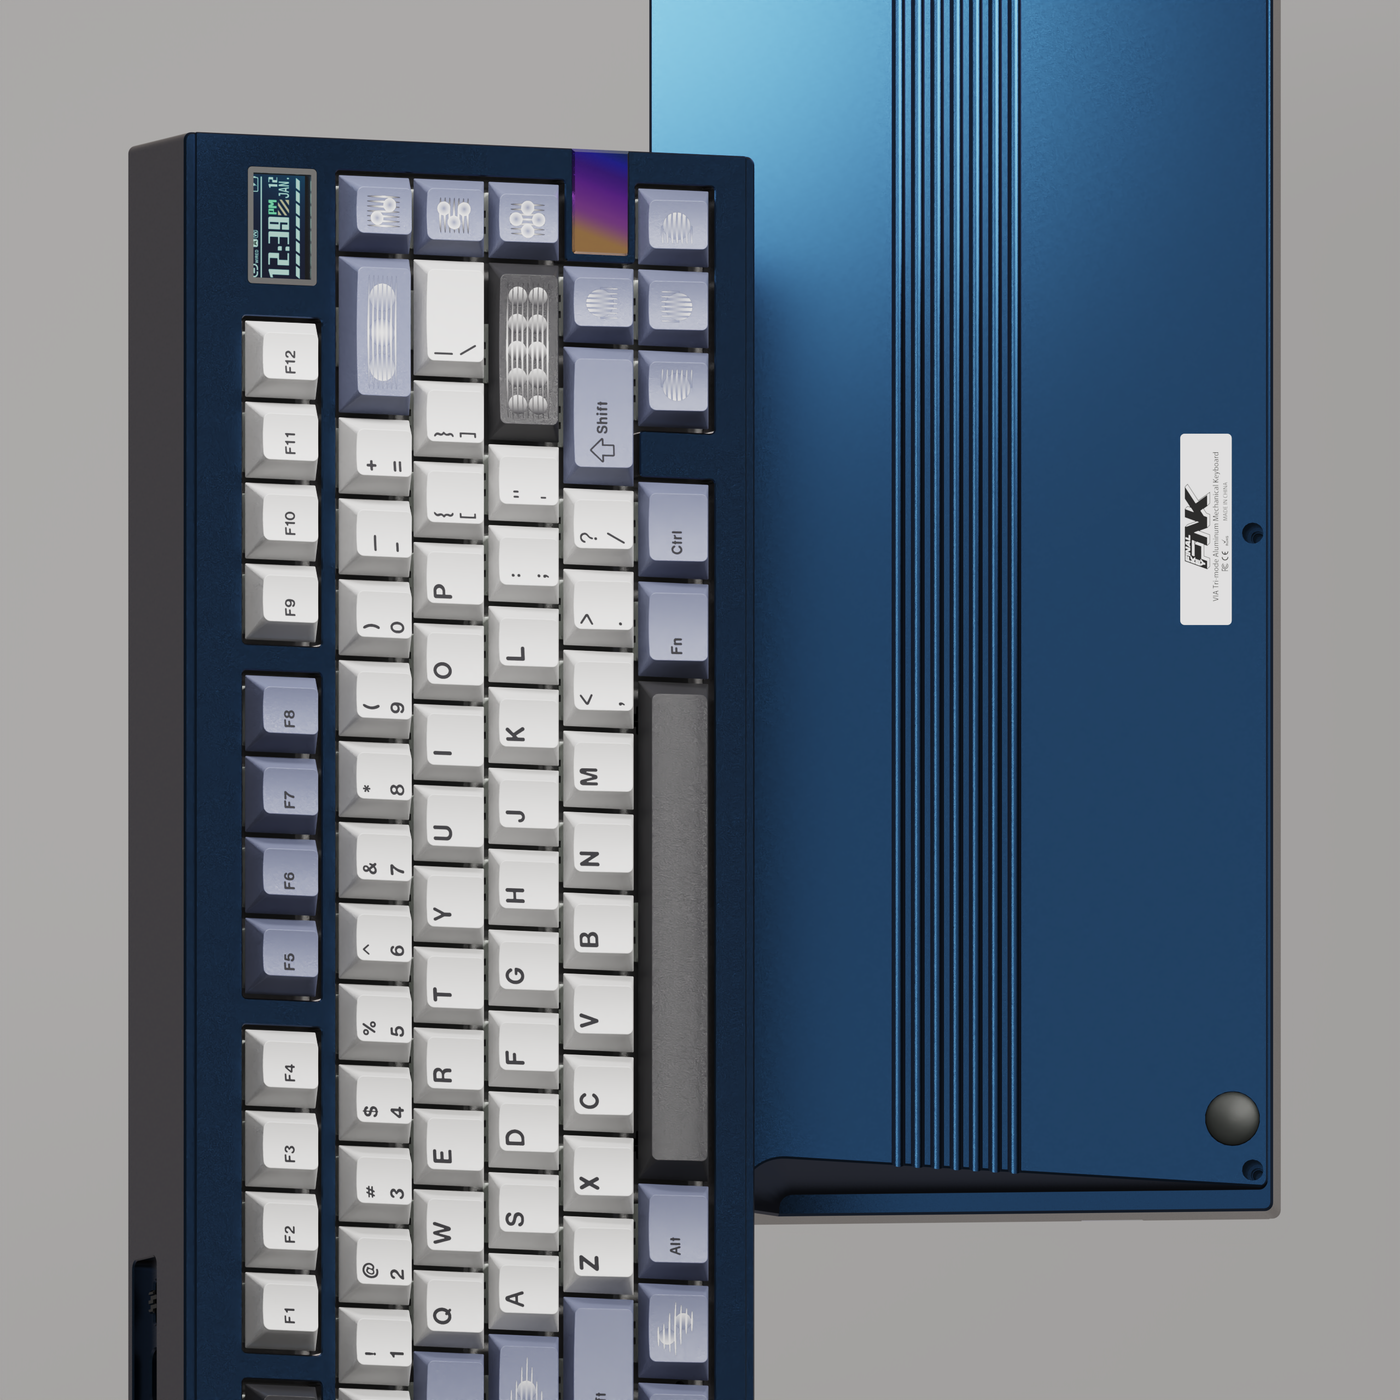 Finalkey V81plus Keyboard Kit